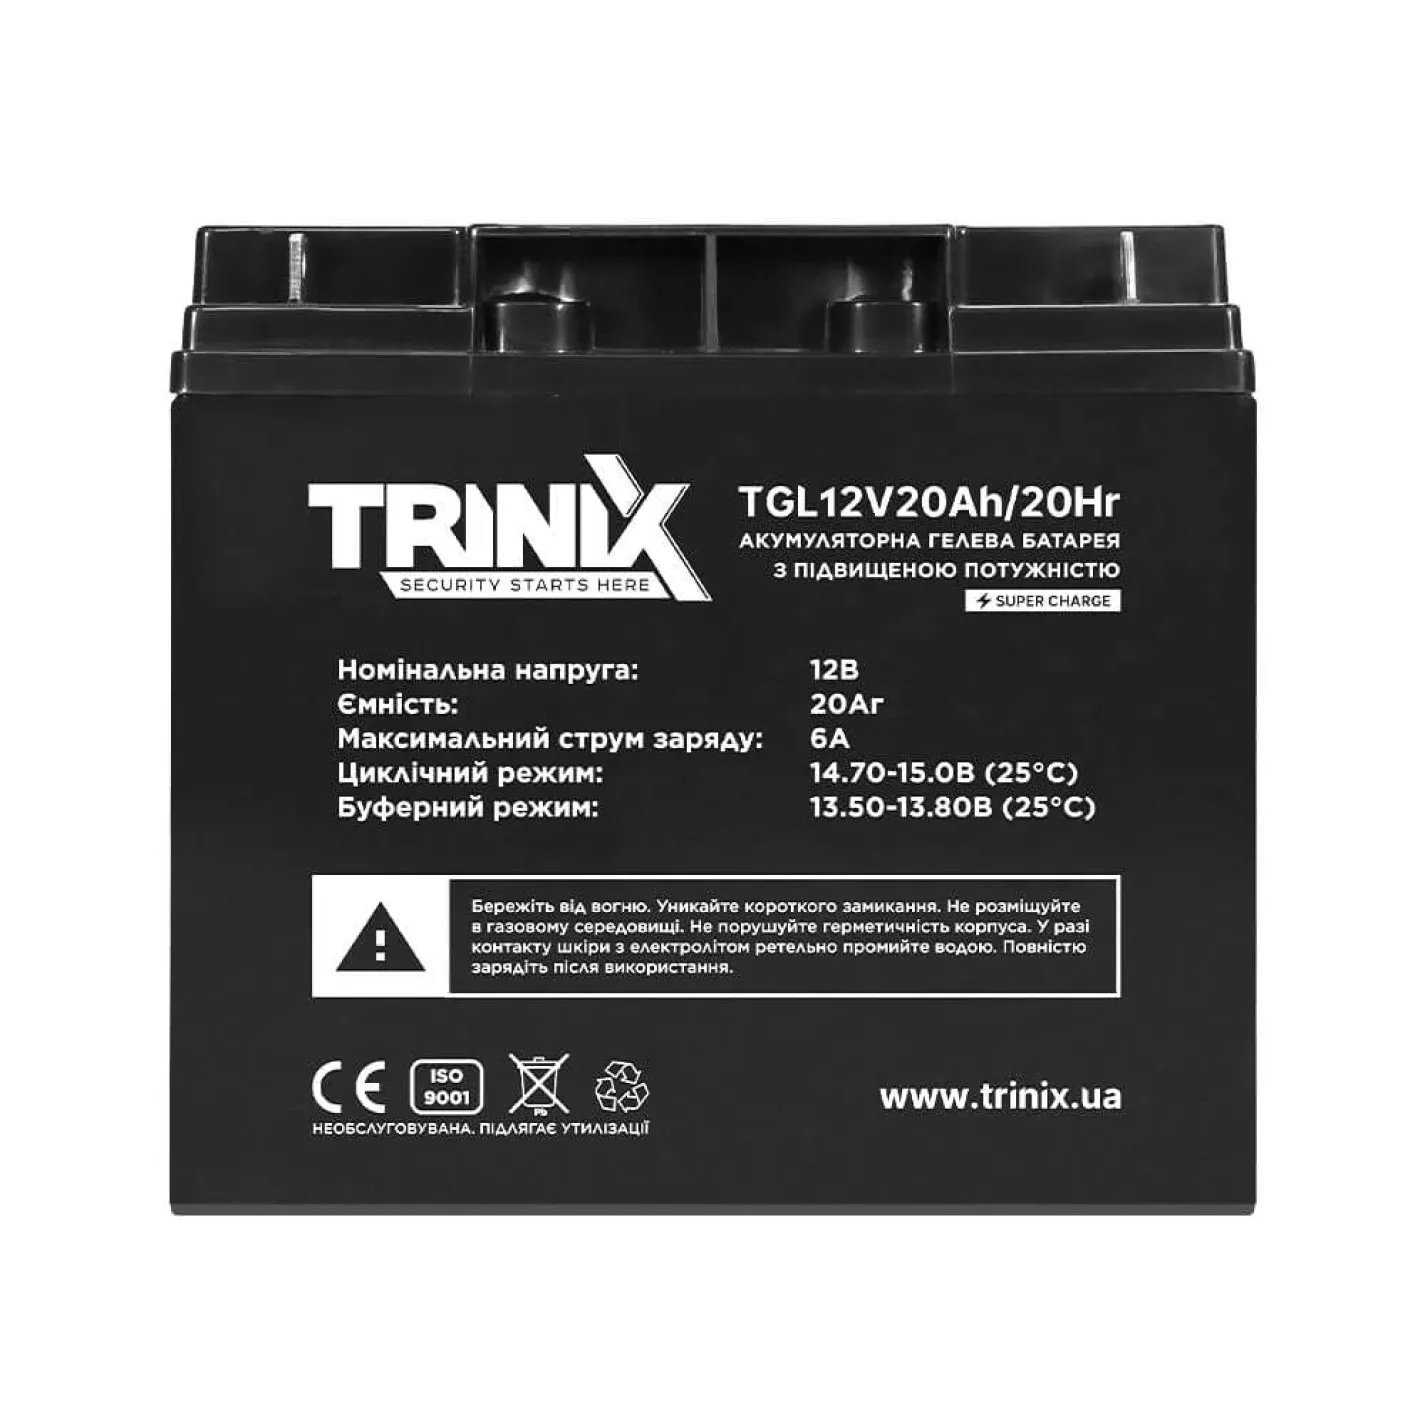 Акумуляторна батарея гелева Trinix 12В 20Аг TGL12V20Ah/20Hr GEL Super Charge - Фото 1